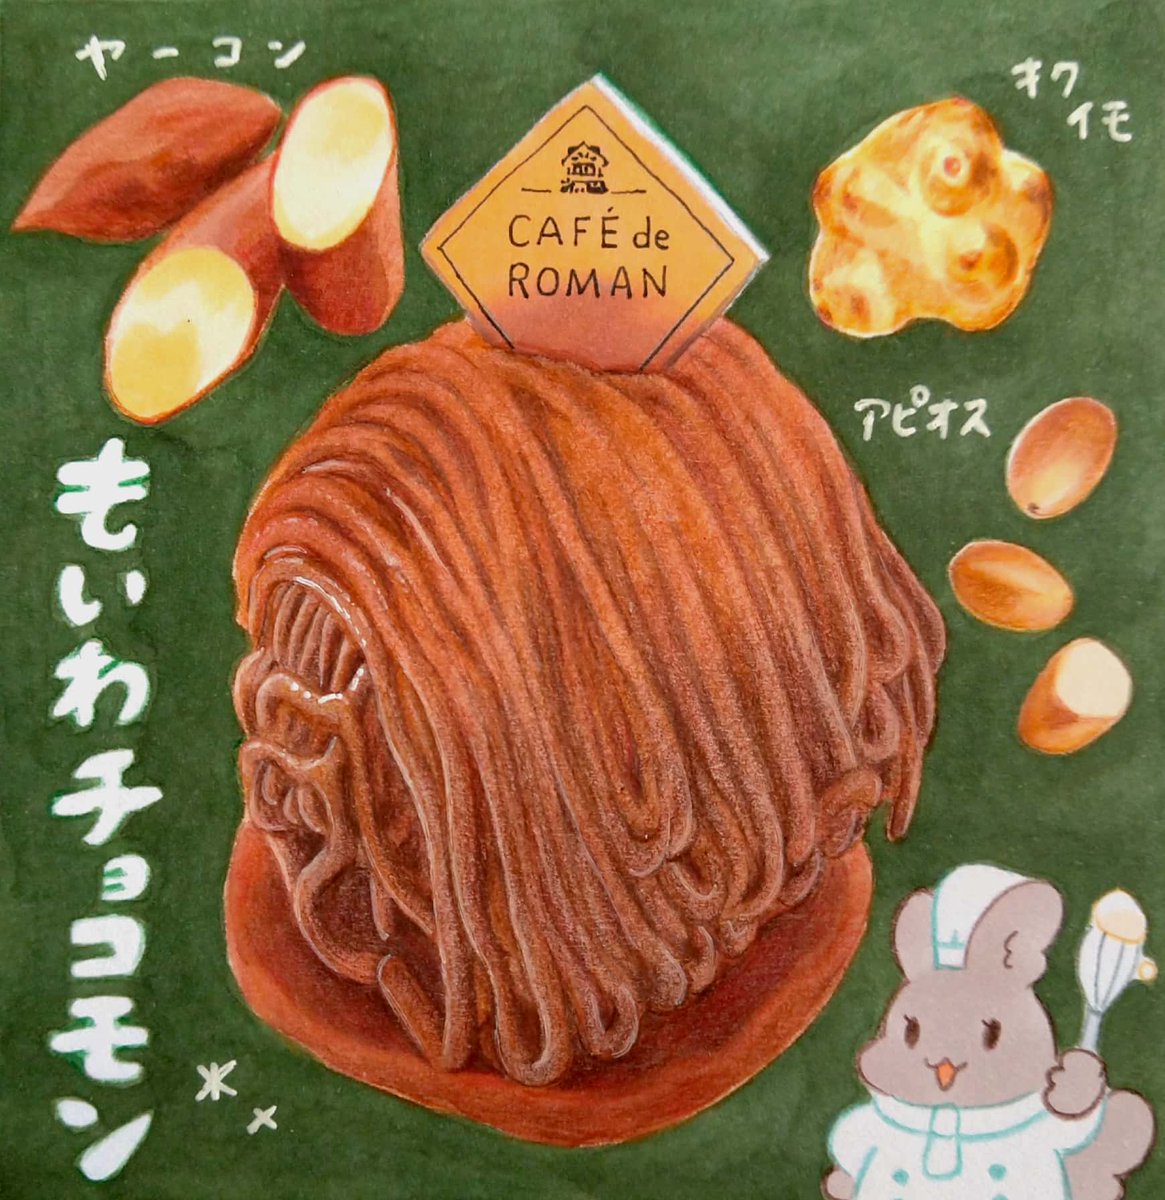 今日は #洋菓子の日 🍰
・モンレーブ
・カフェ・ド・ロマン
・菓子処梅屋
・くろねこニャーゴのお菓子屋さん
#北海道 #イラスト #食べ物イラスト 